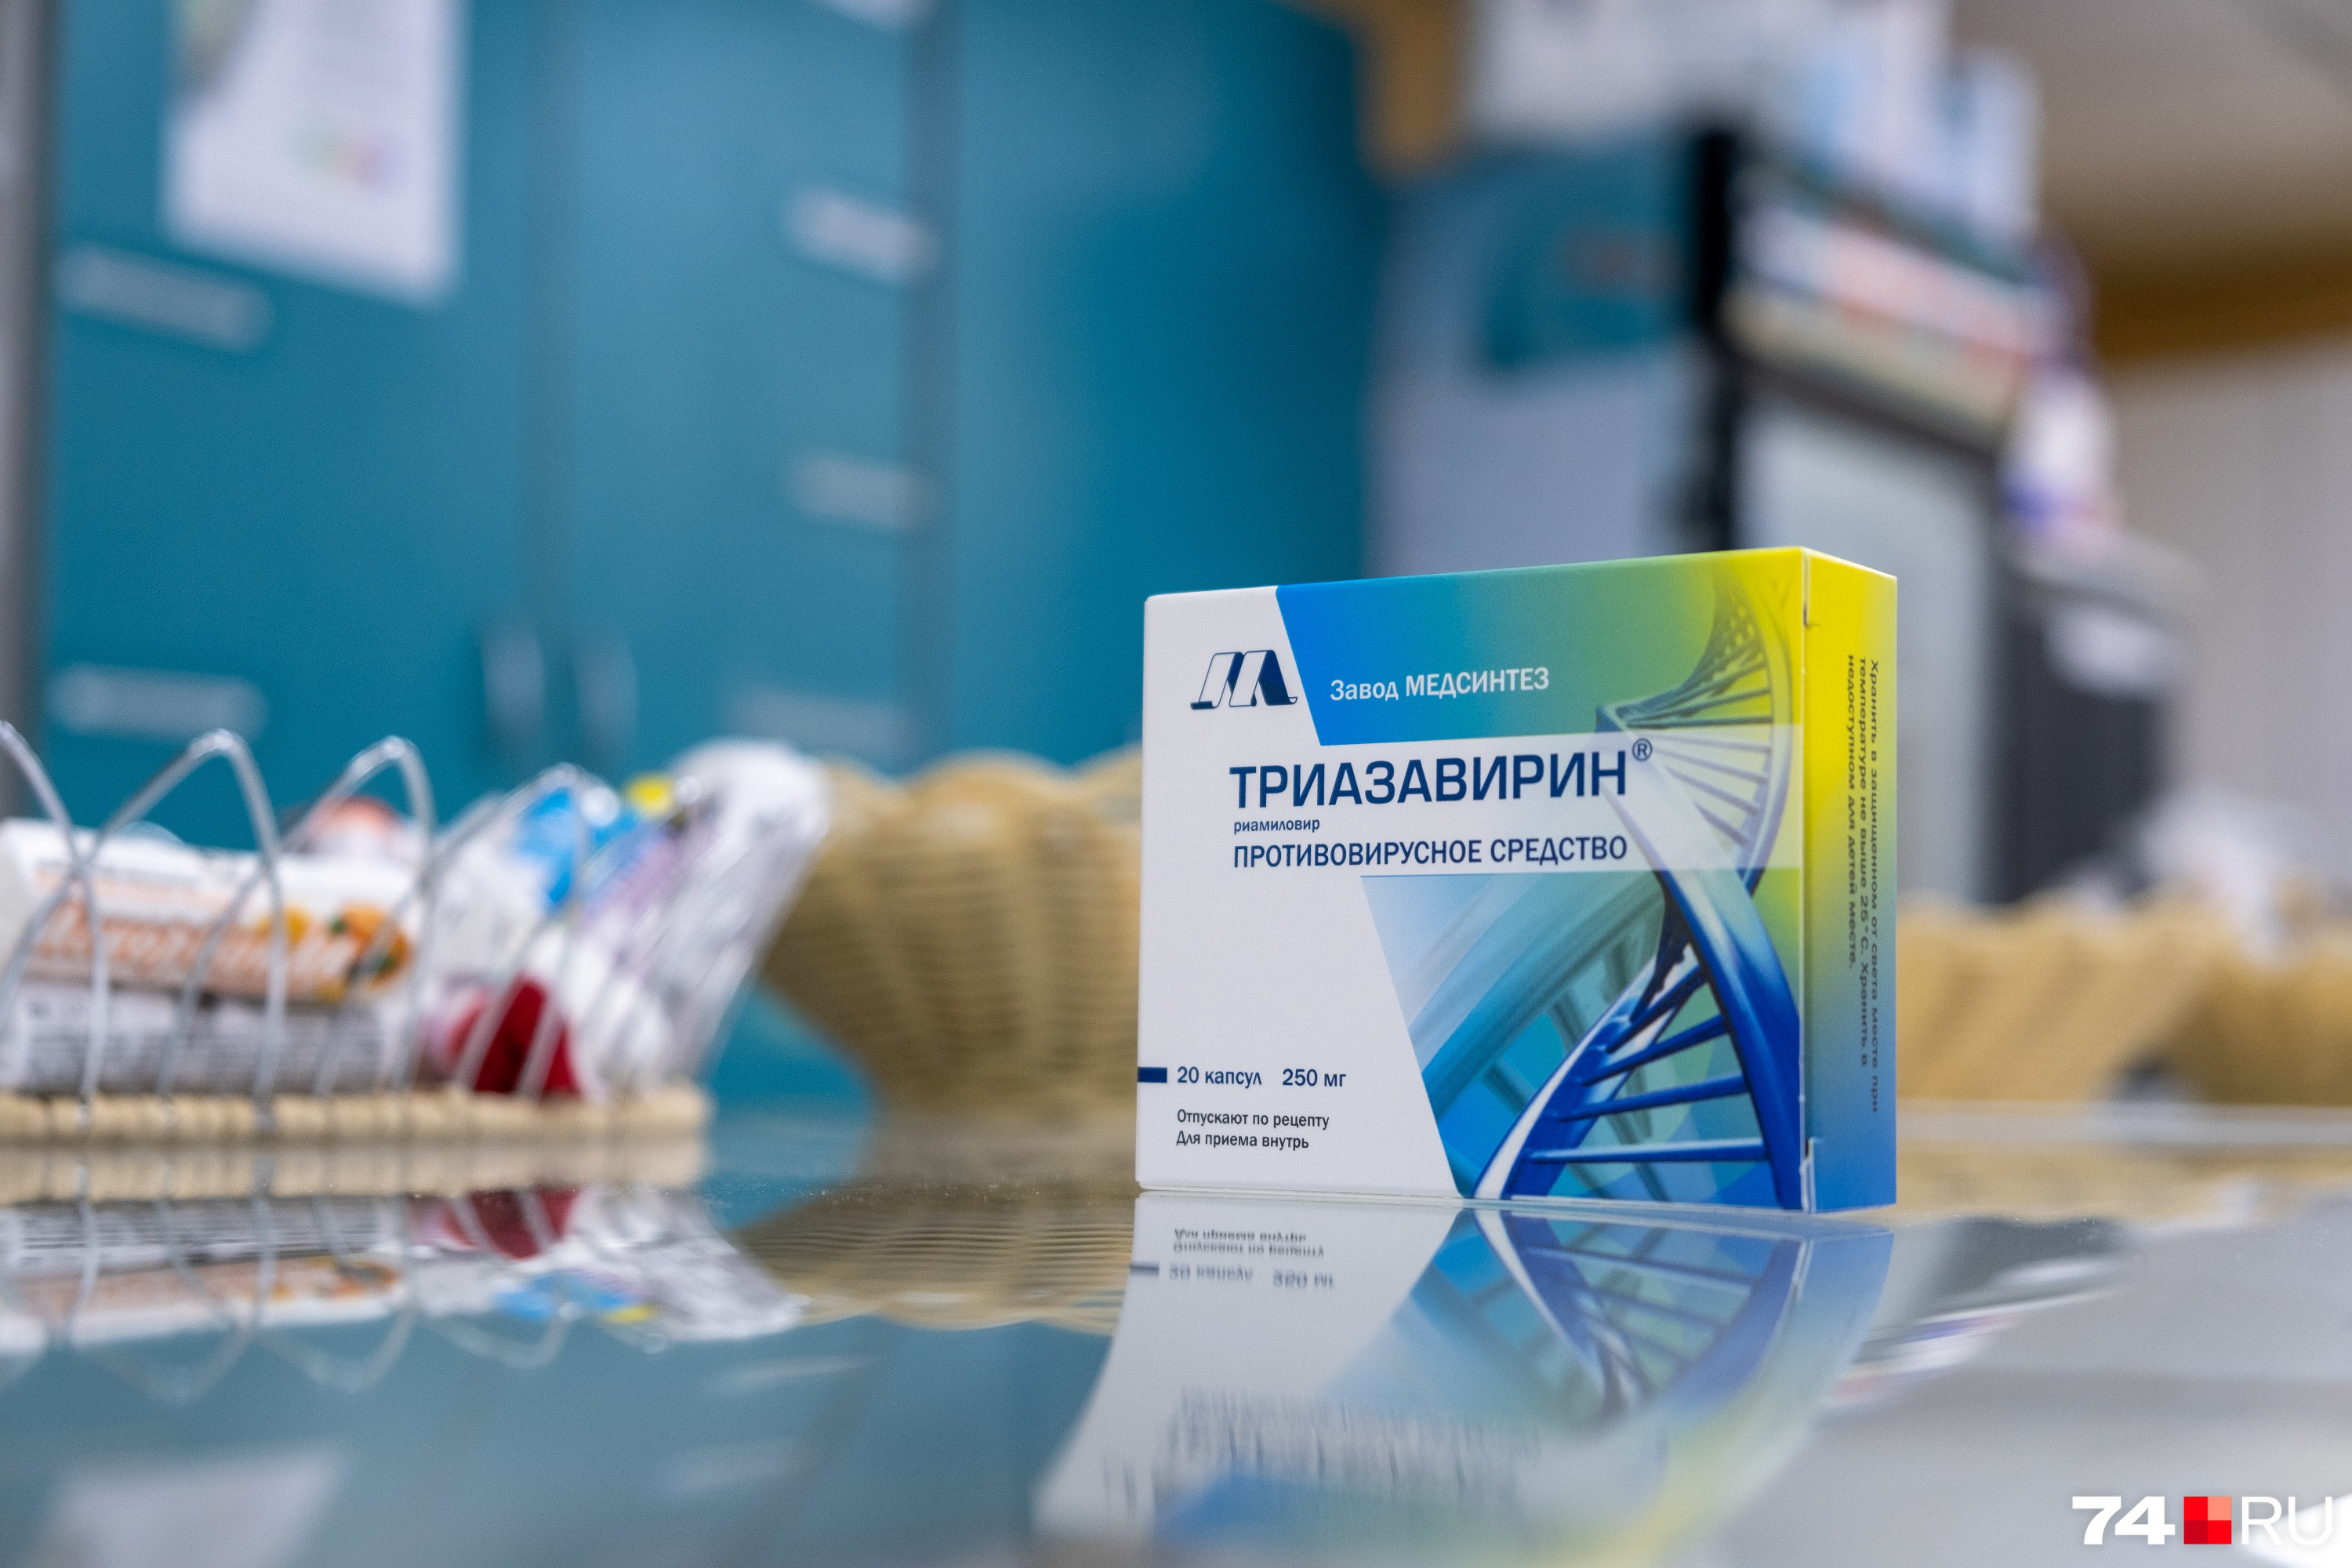 Цена на «Триазавирин» — около 1500 рублей за 20 таблеток